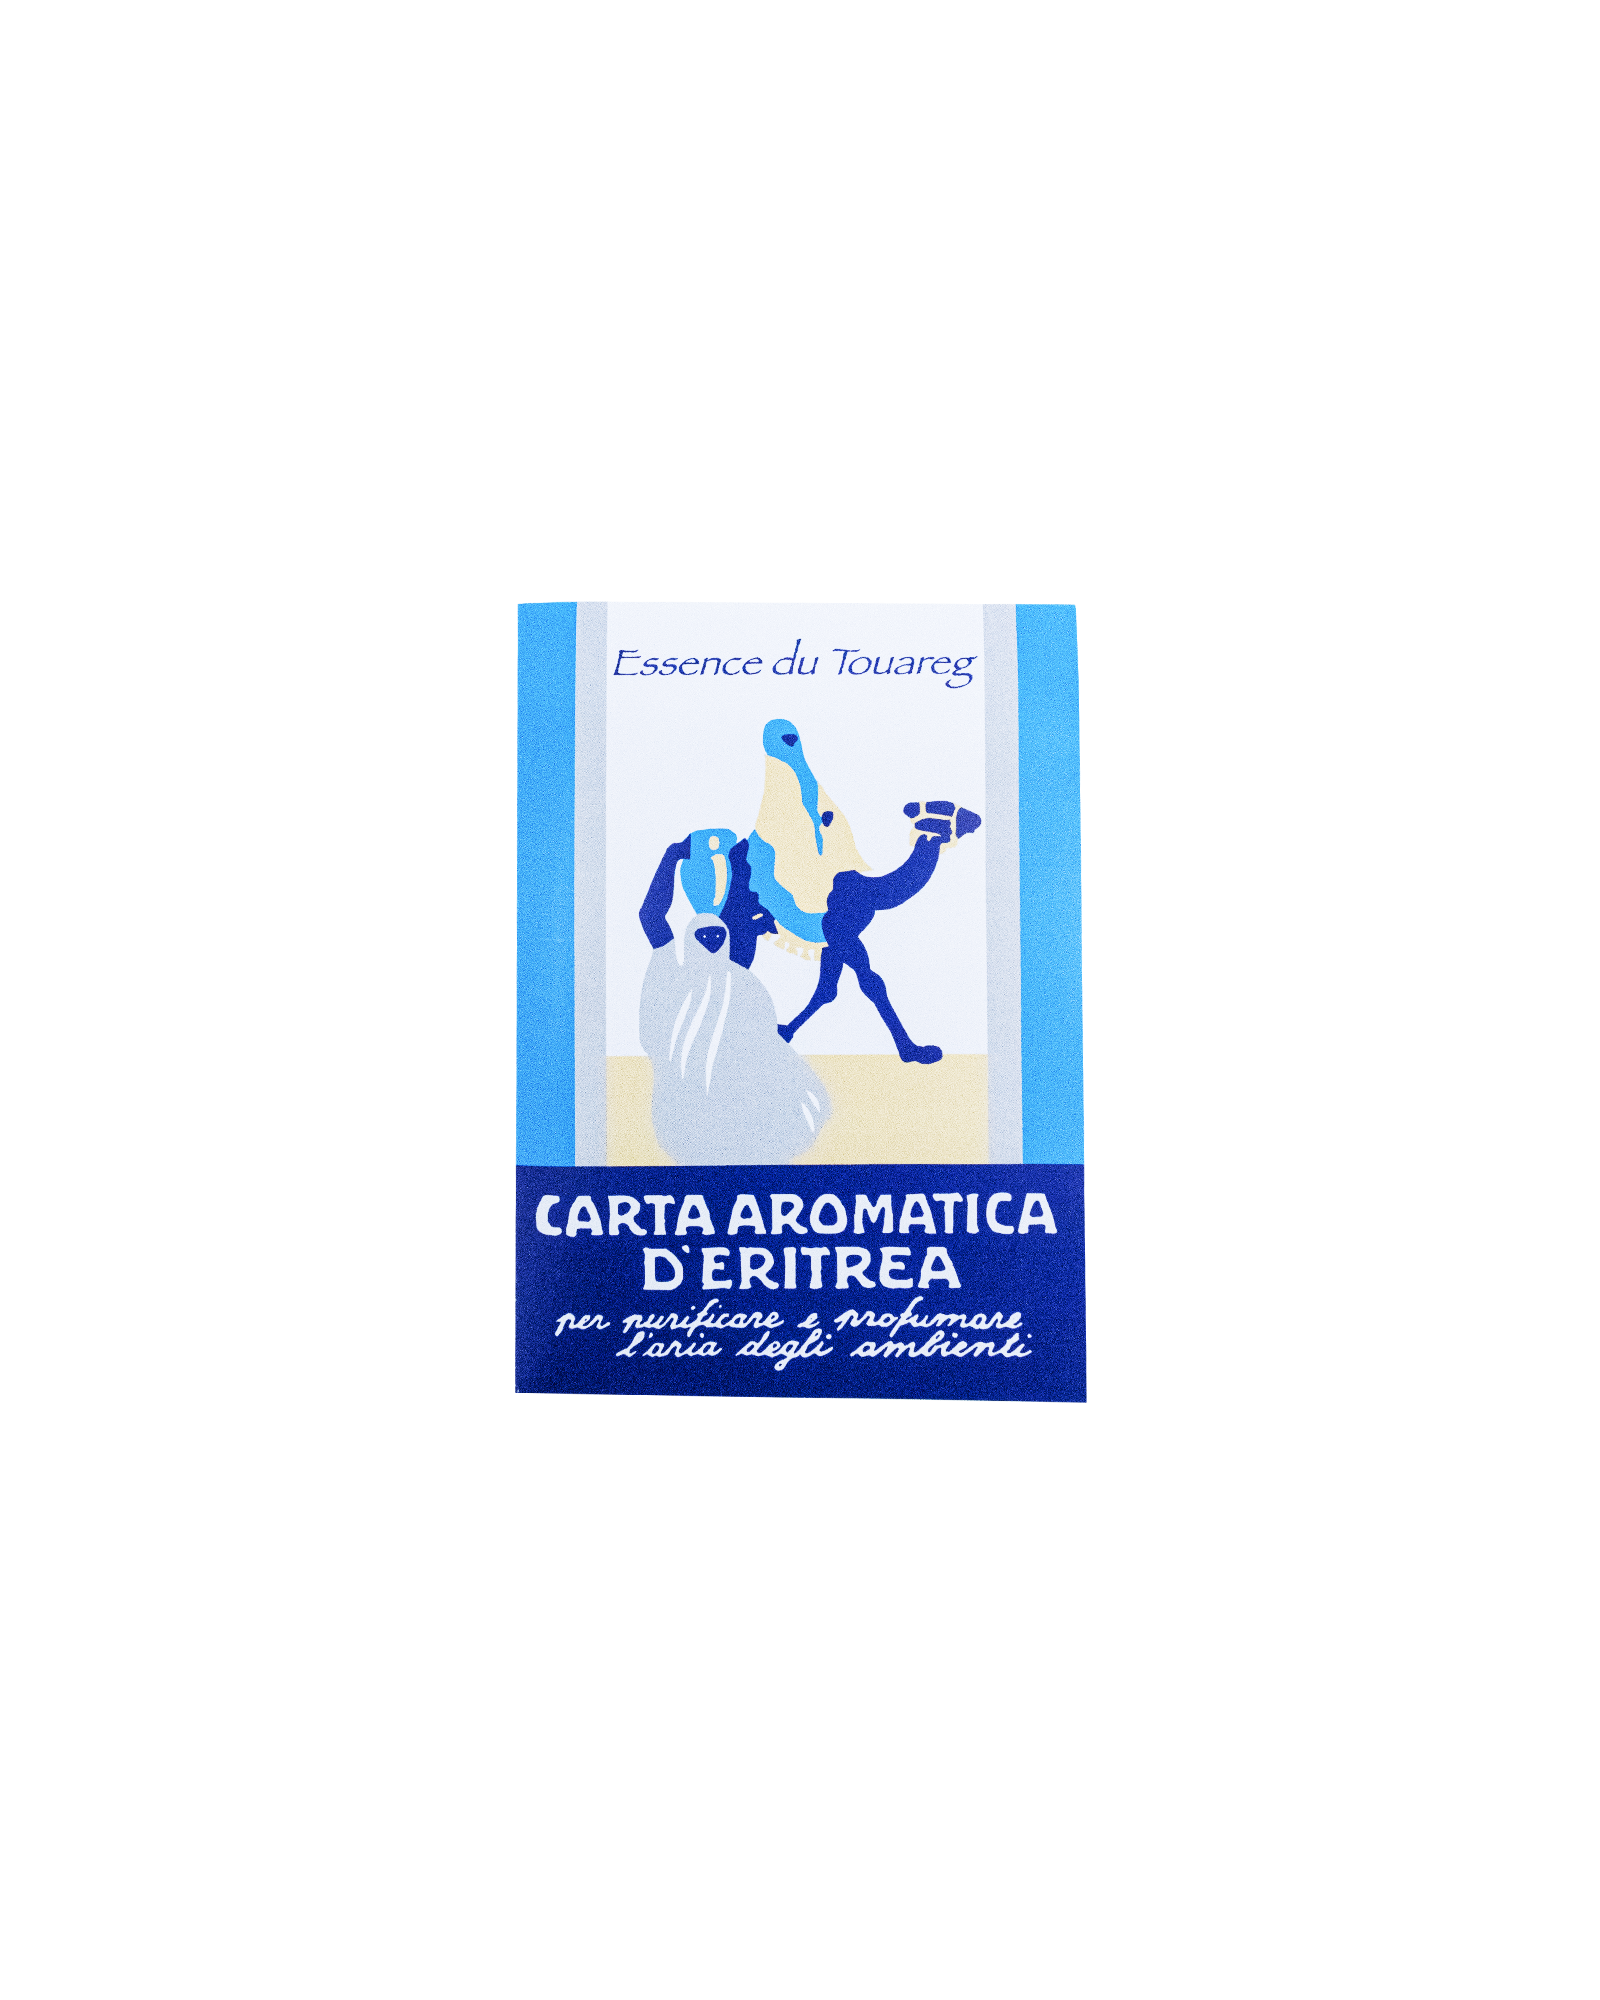 Carta Aromatica D’eritrea (Essence du Touareg)